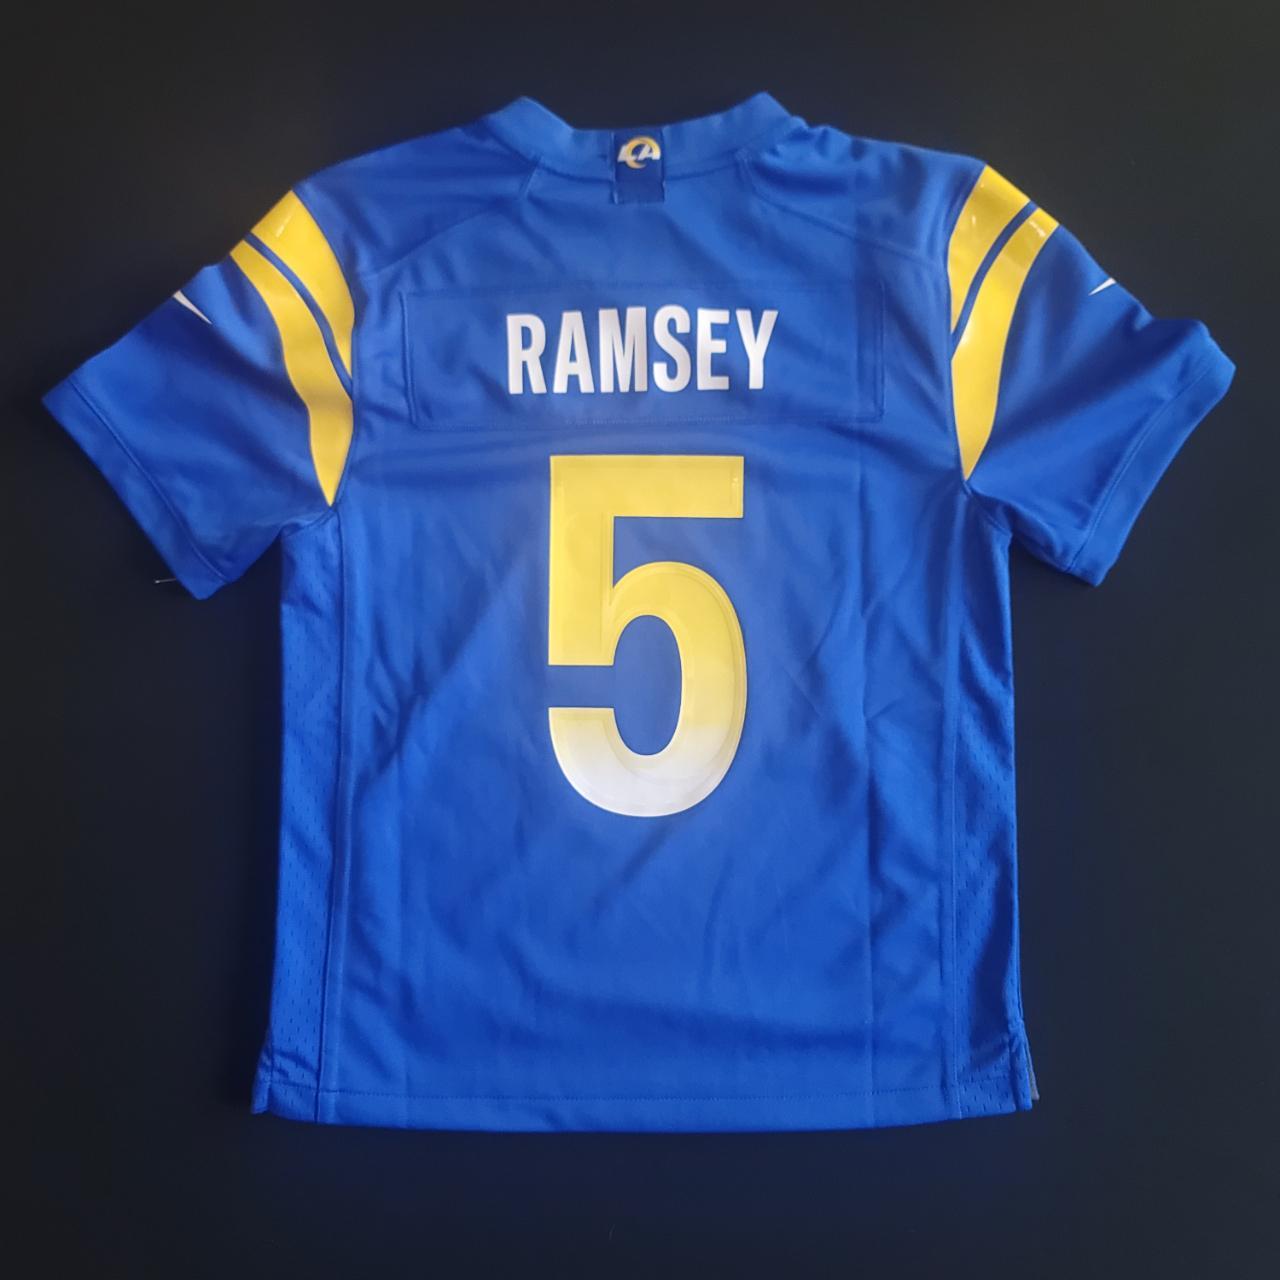 NFL Los Angeles Rams (Jalen Ramsey) Men's Game Football Jersey.